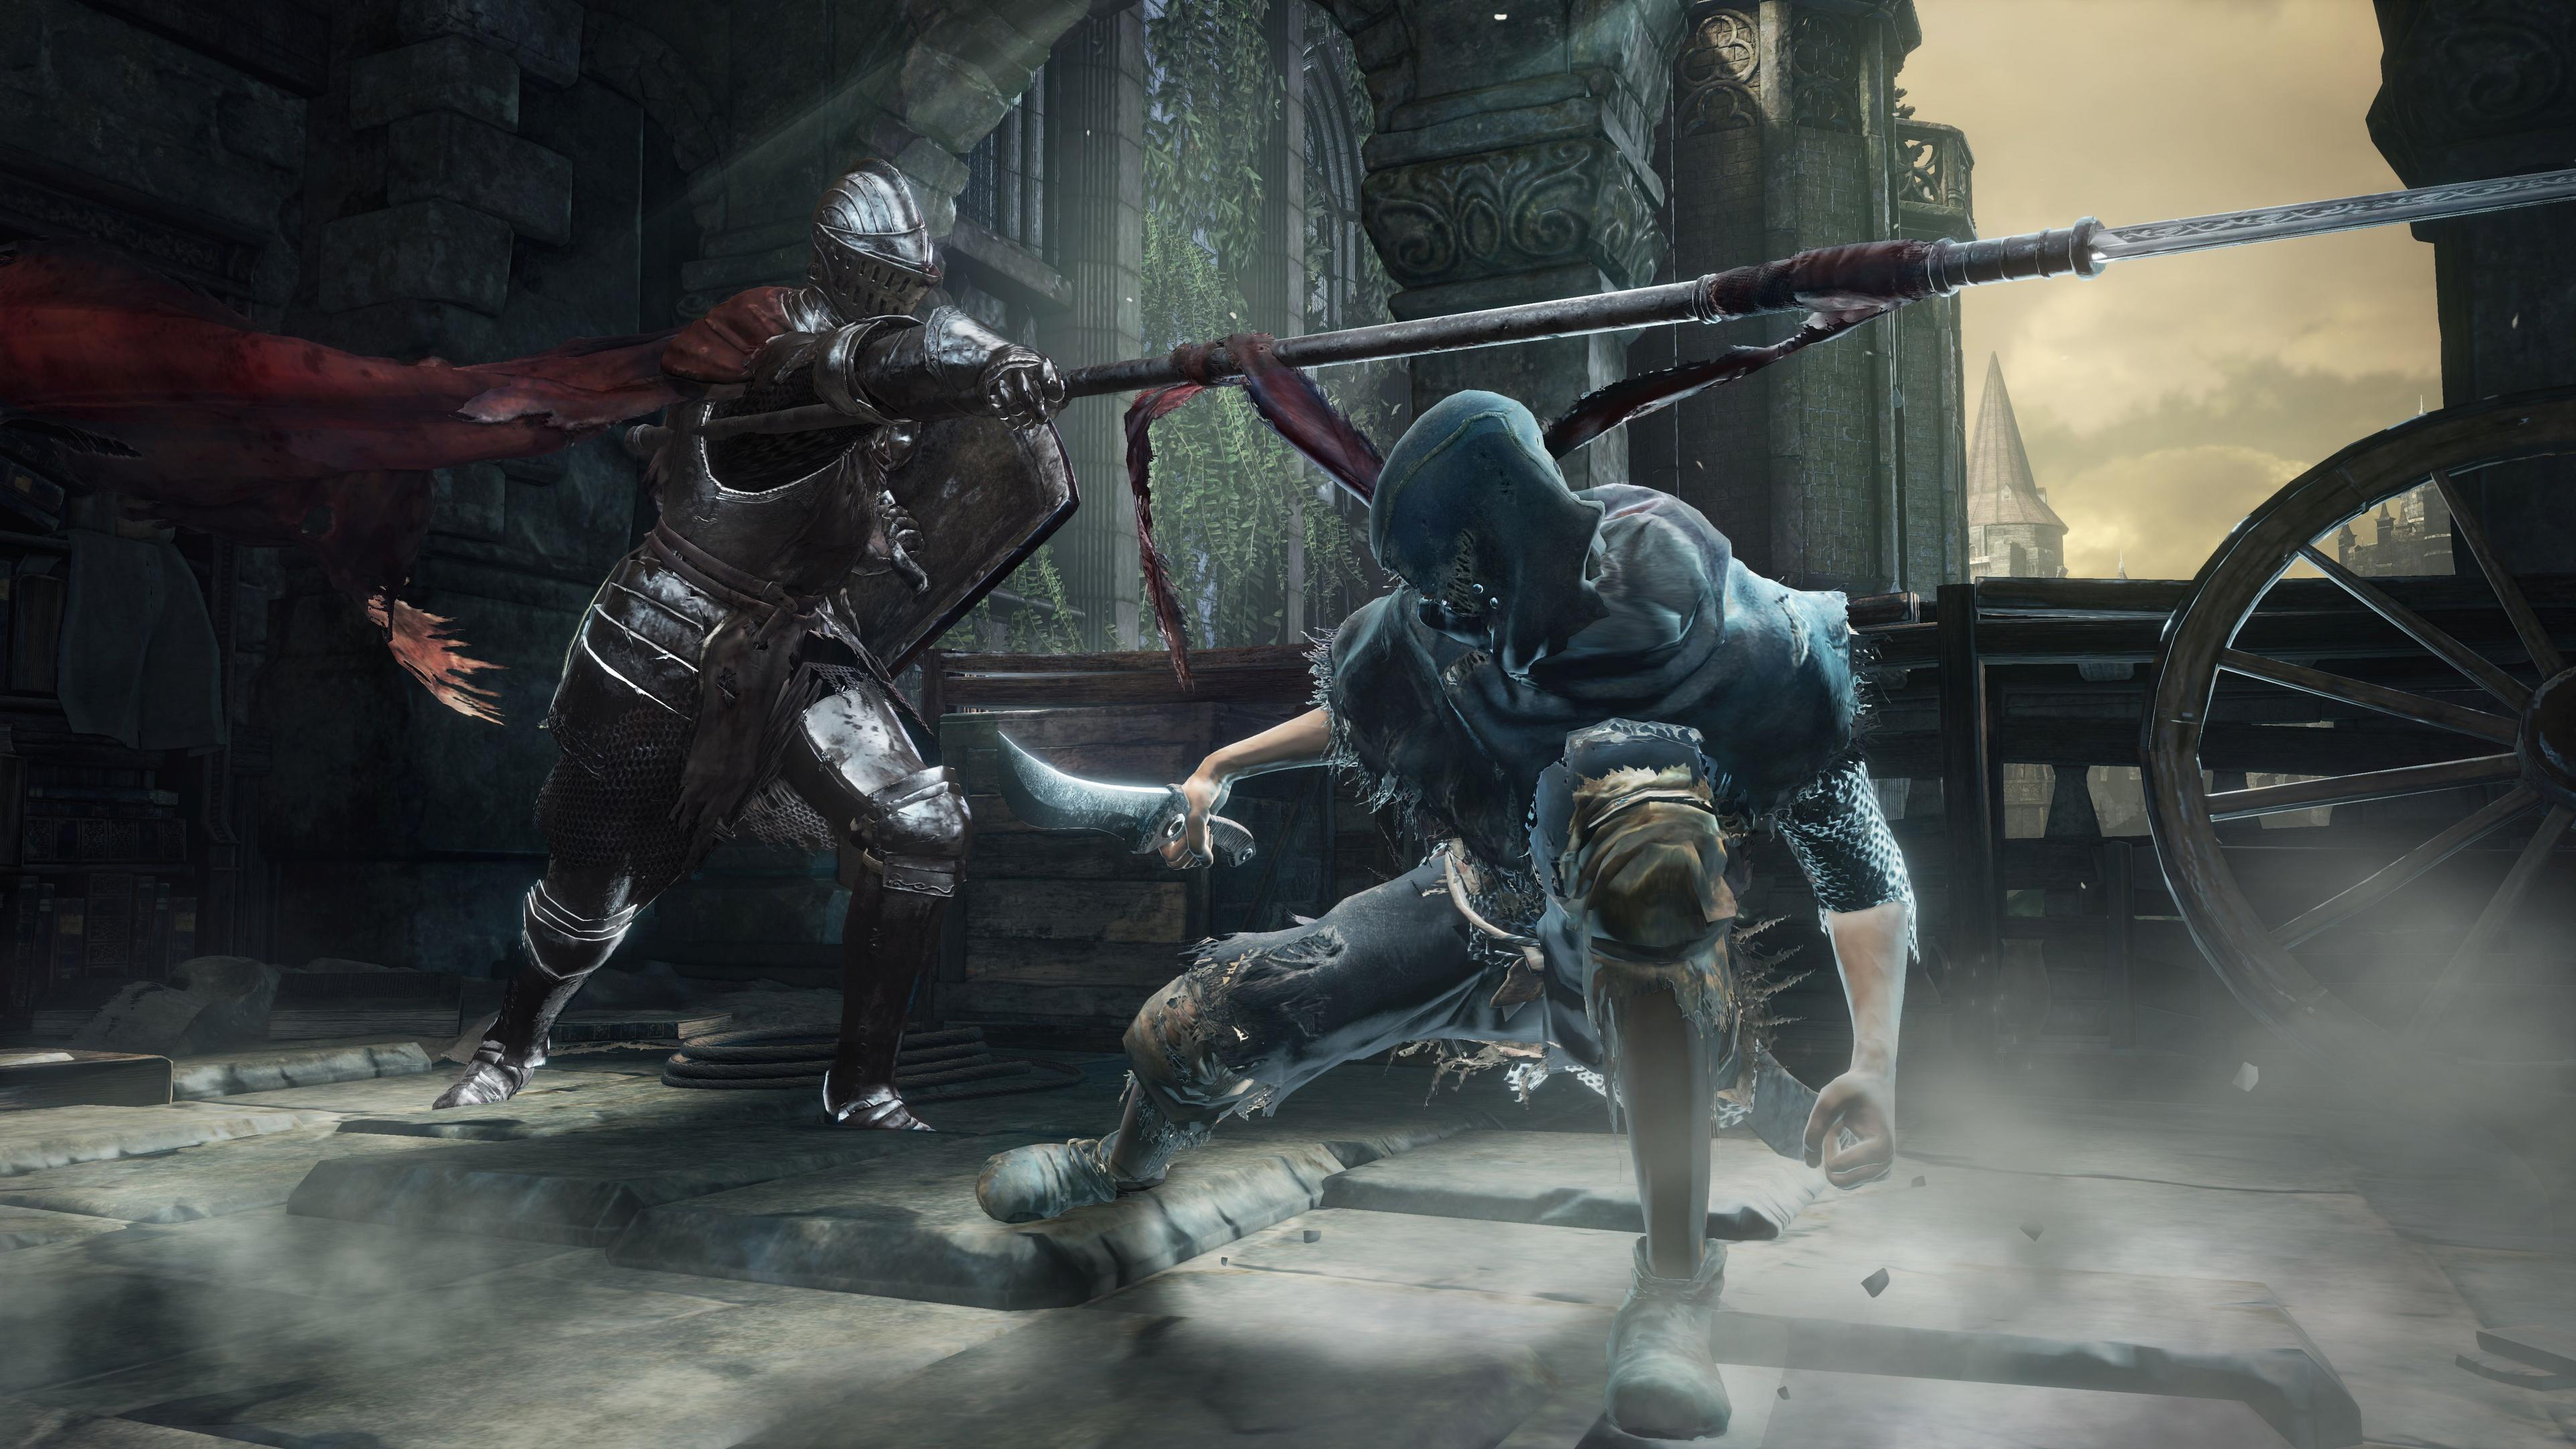 Imagens de Dark Souls 3 mostram novos inimigos e magia